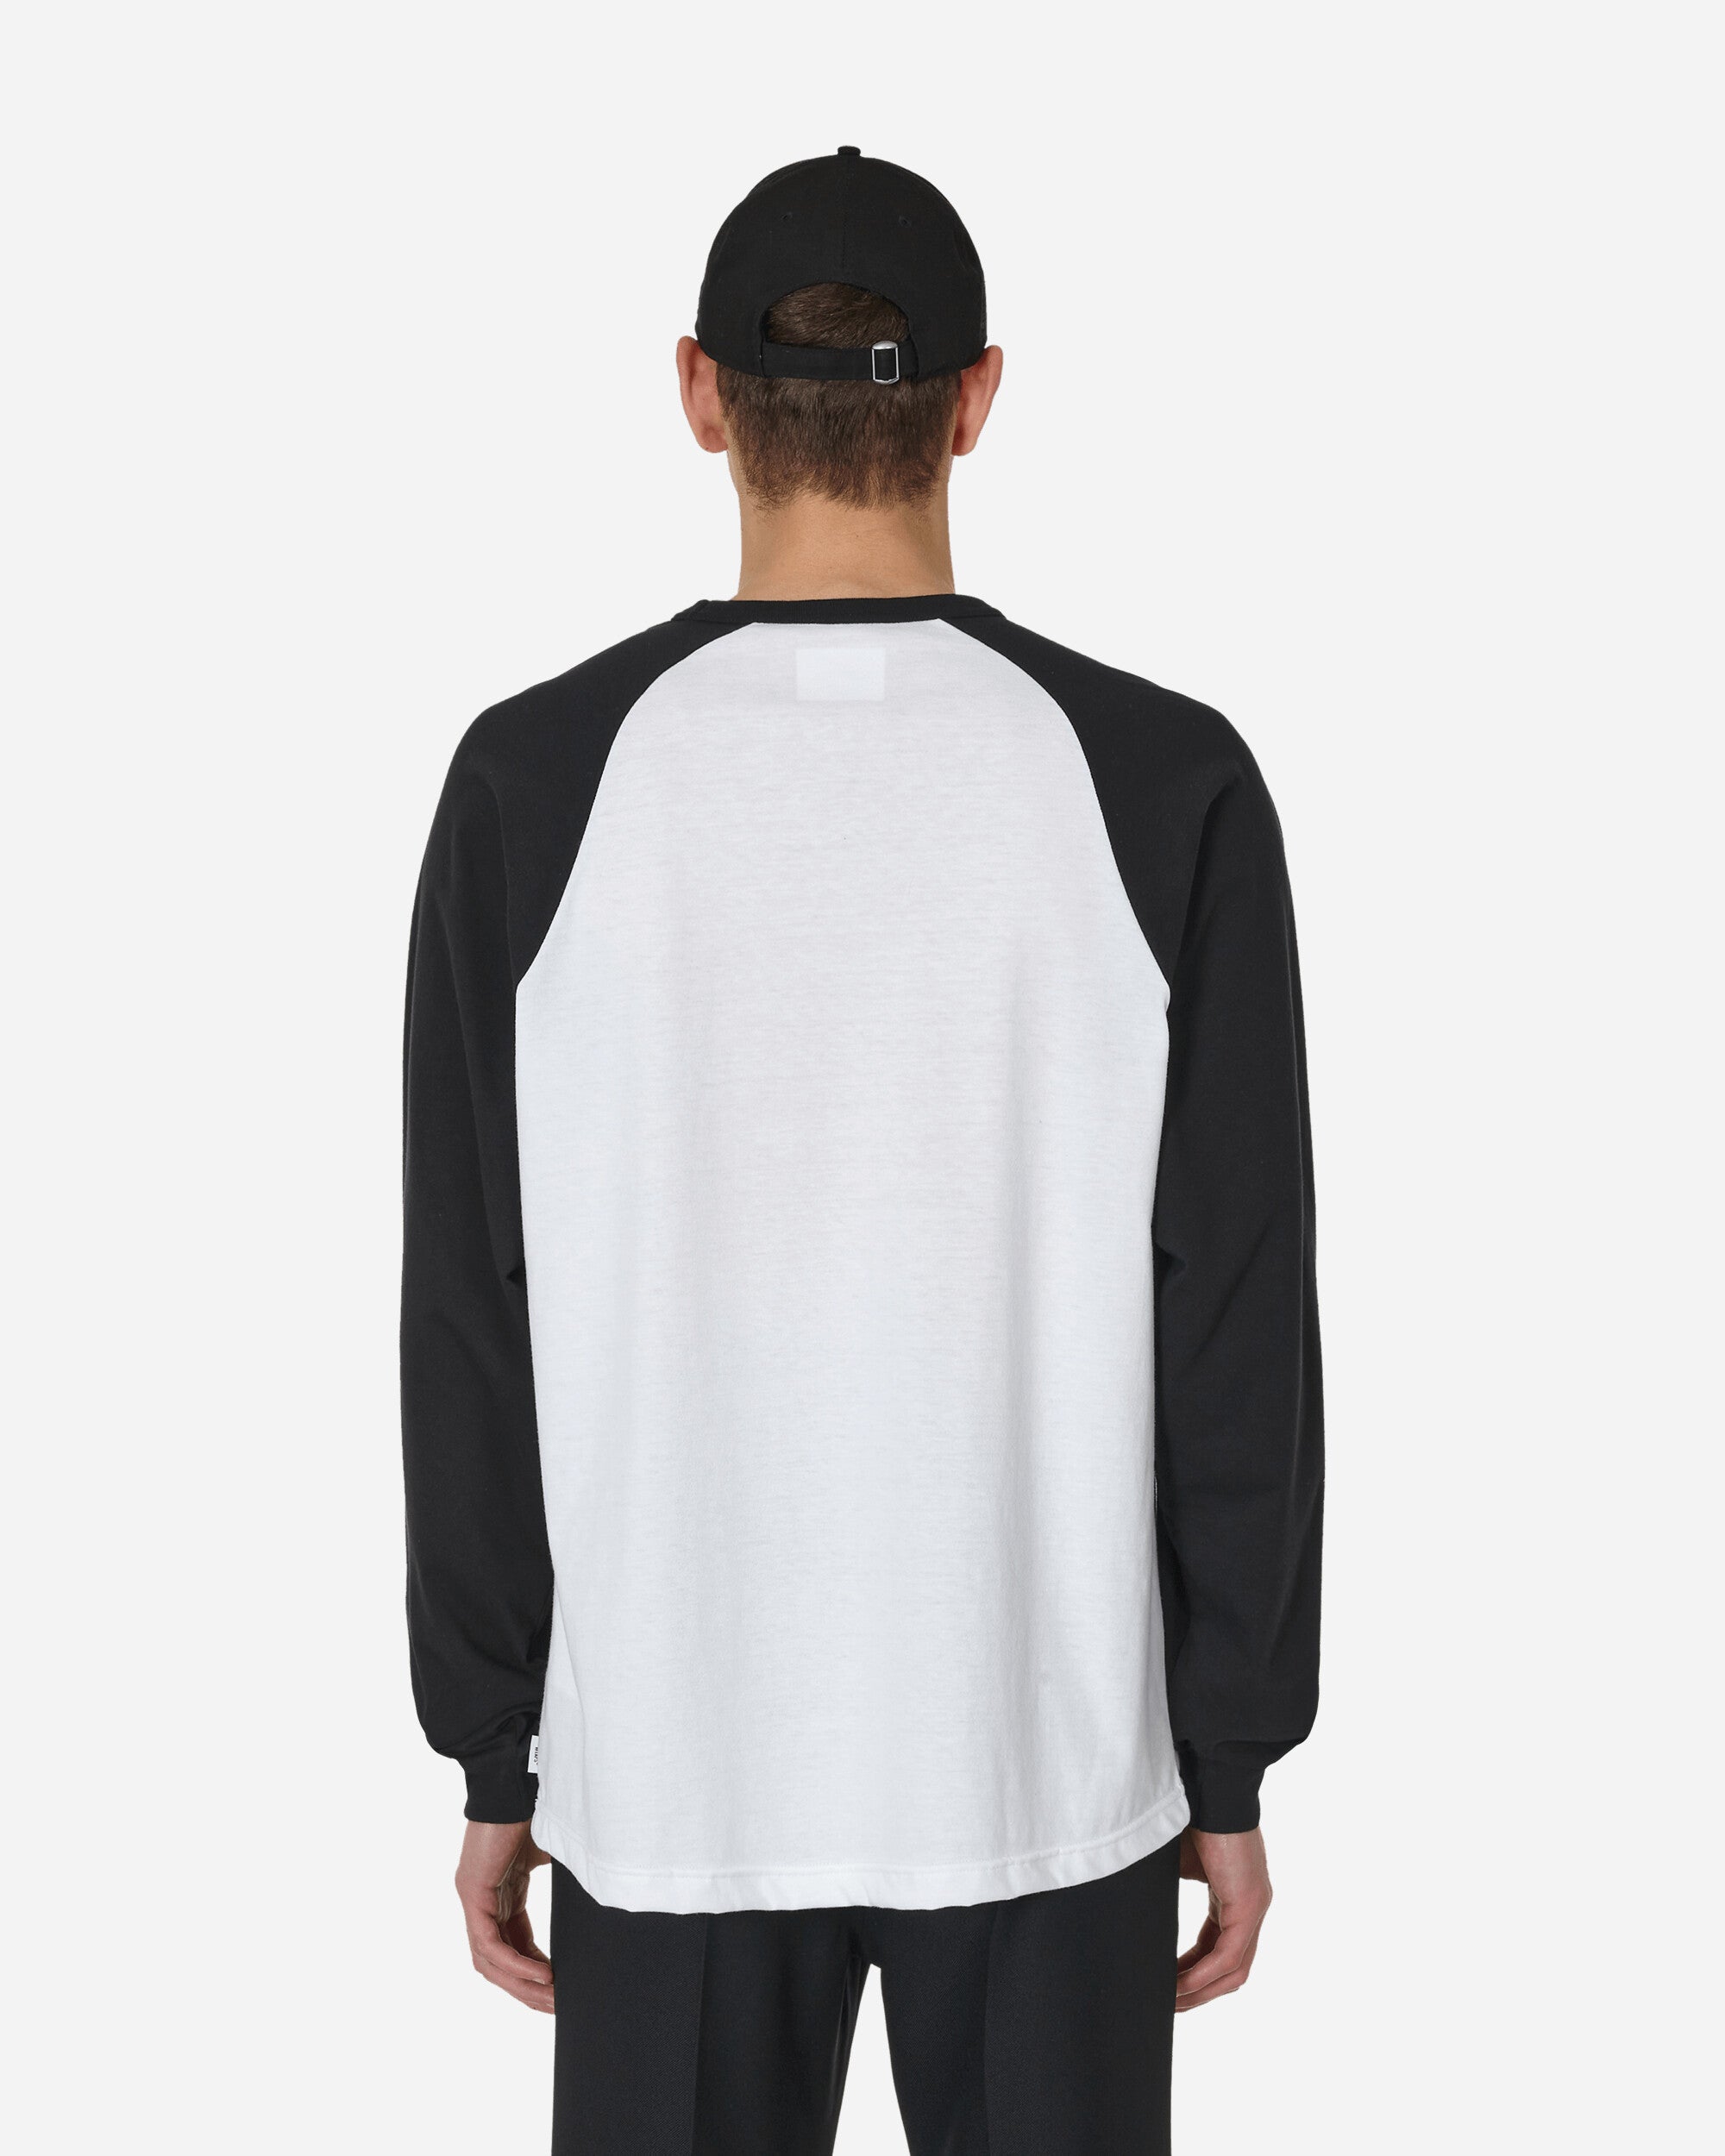 WTAPS Ian Longsleeve T-Shirt Black / White - Slam Jam Official Store